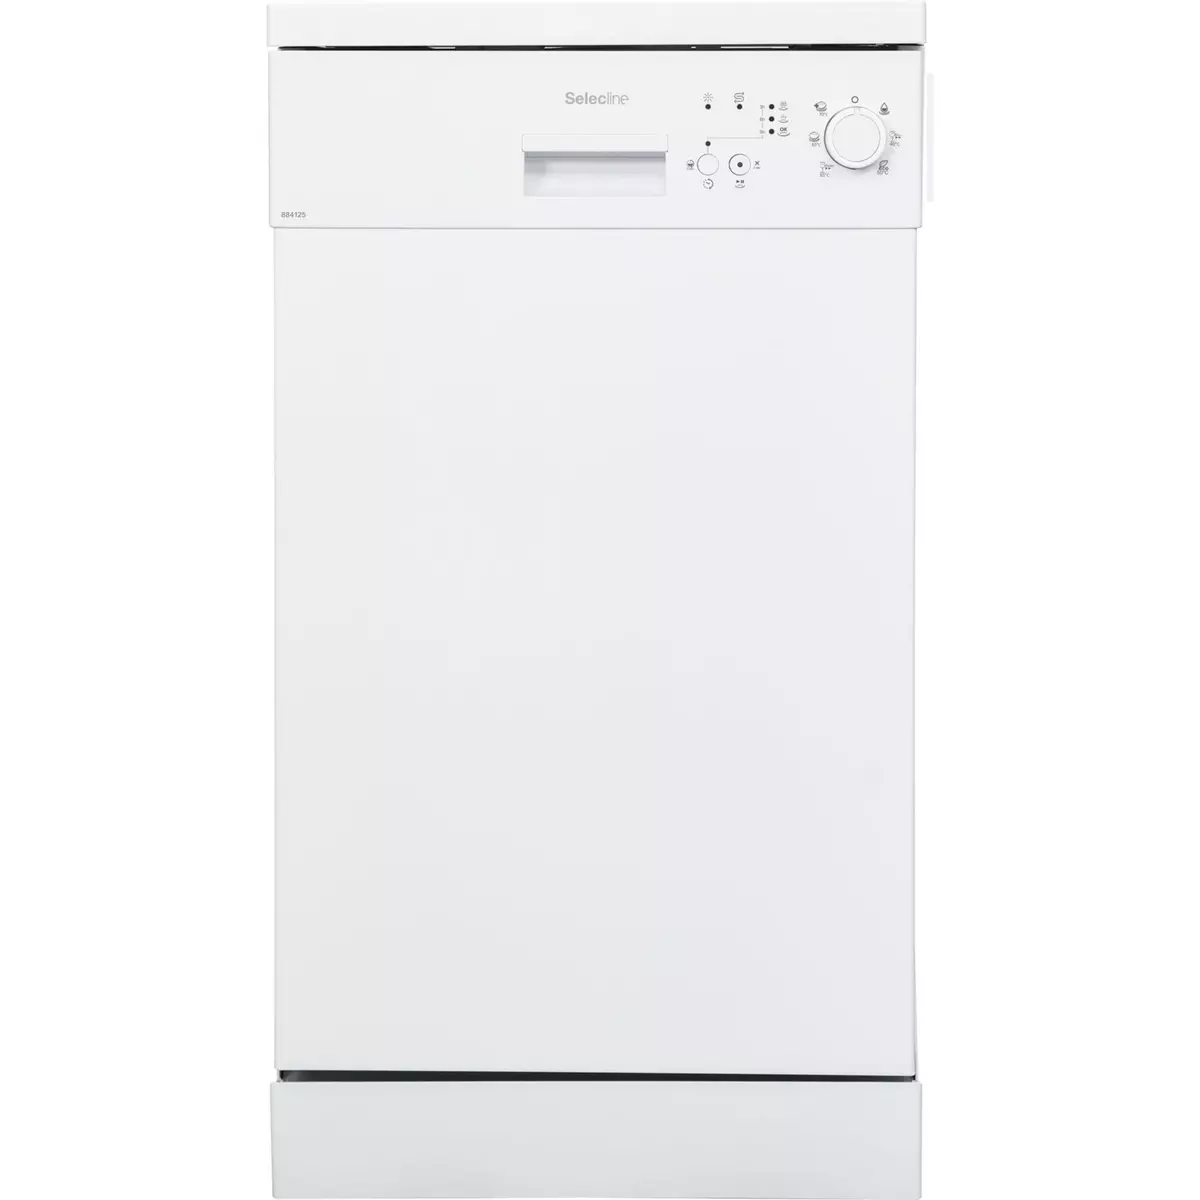 SELECLINE Lave vaisselle non encastrable 600081668, 10 couverts, 45 cm, 49 dB, 6 programmes